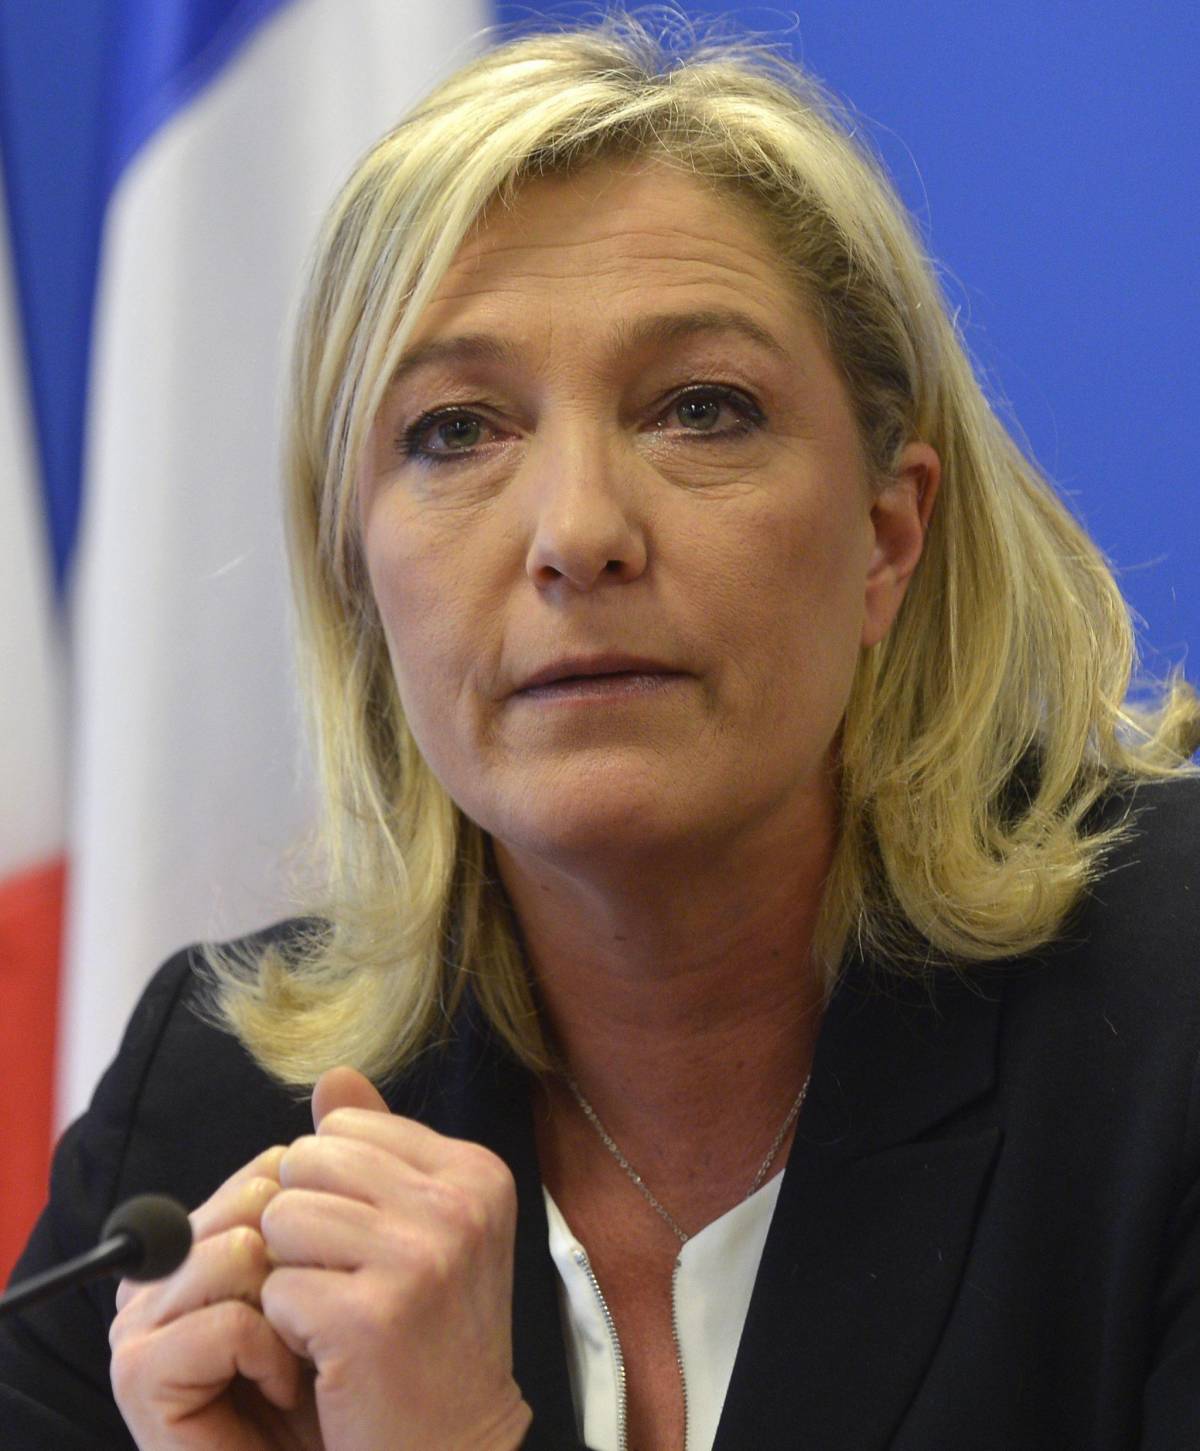 Marine Le Pen, leader del Front National